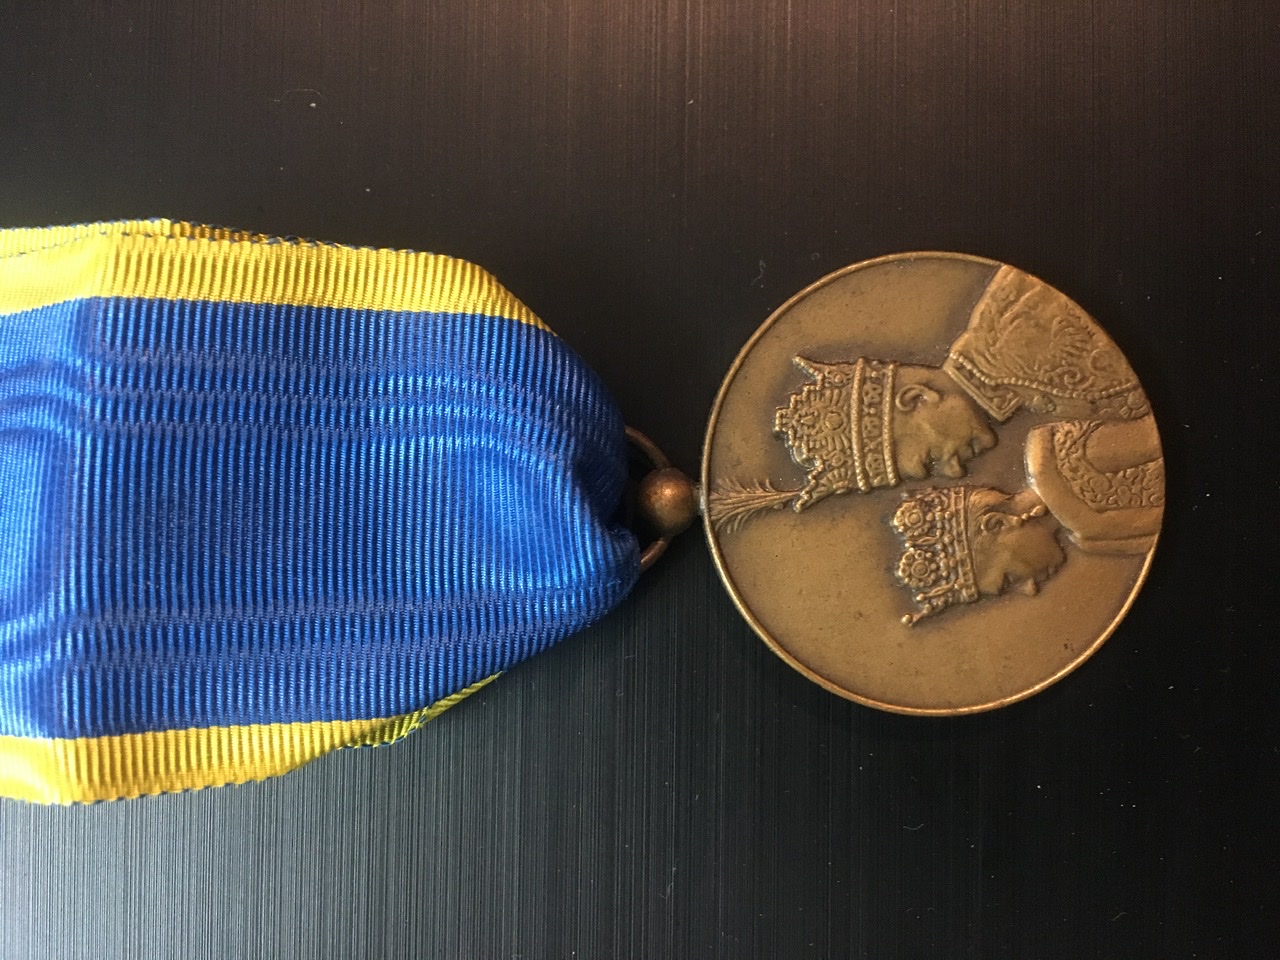 مدال زیبا و ارزشمند یادبود تاجگذاری محمد رضا شاه و فرح پهلوی